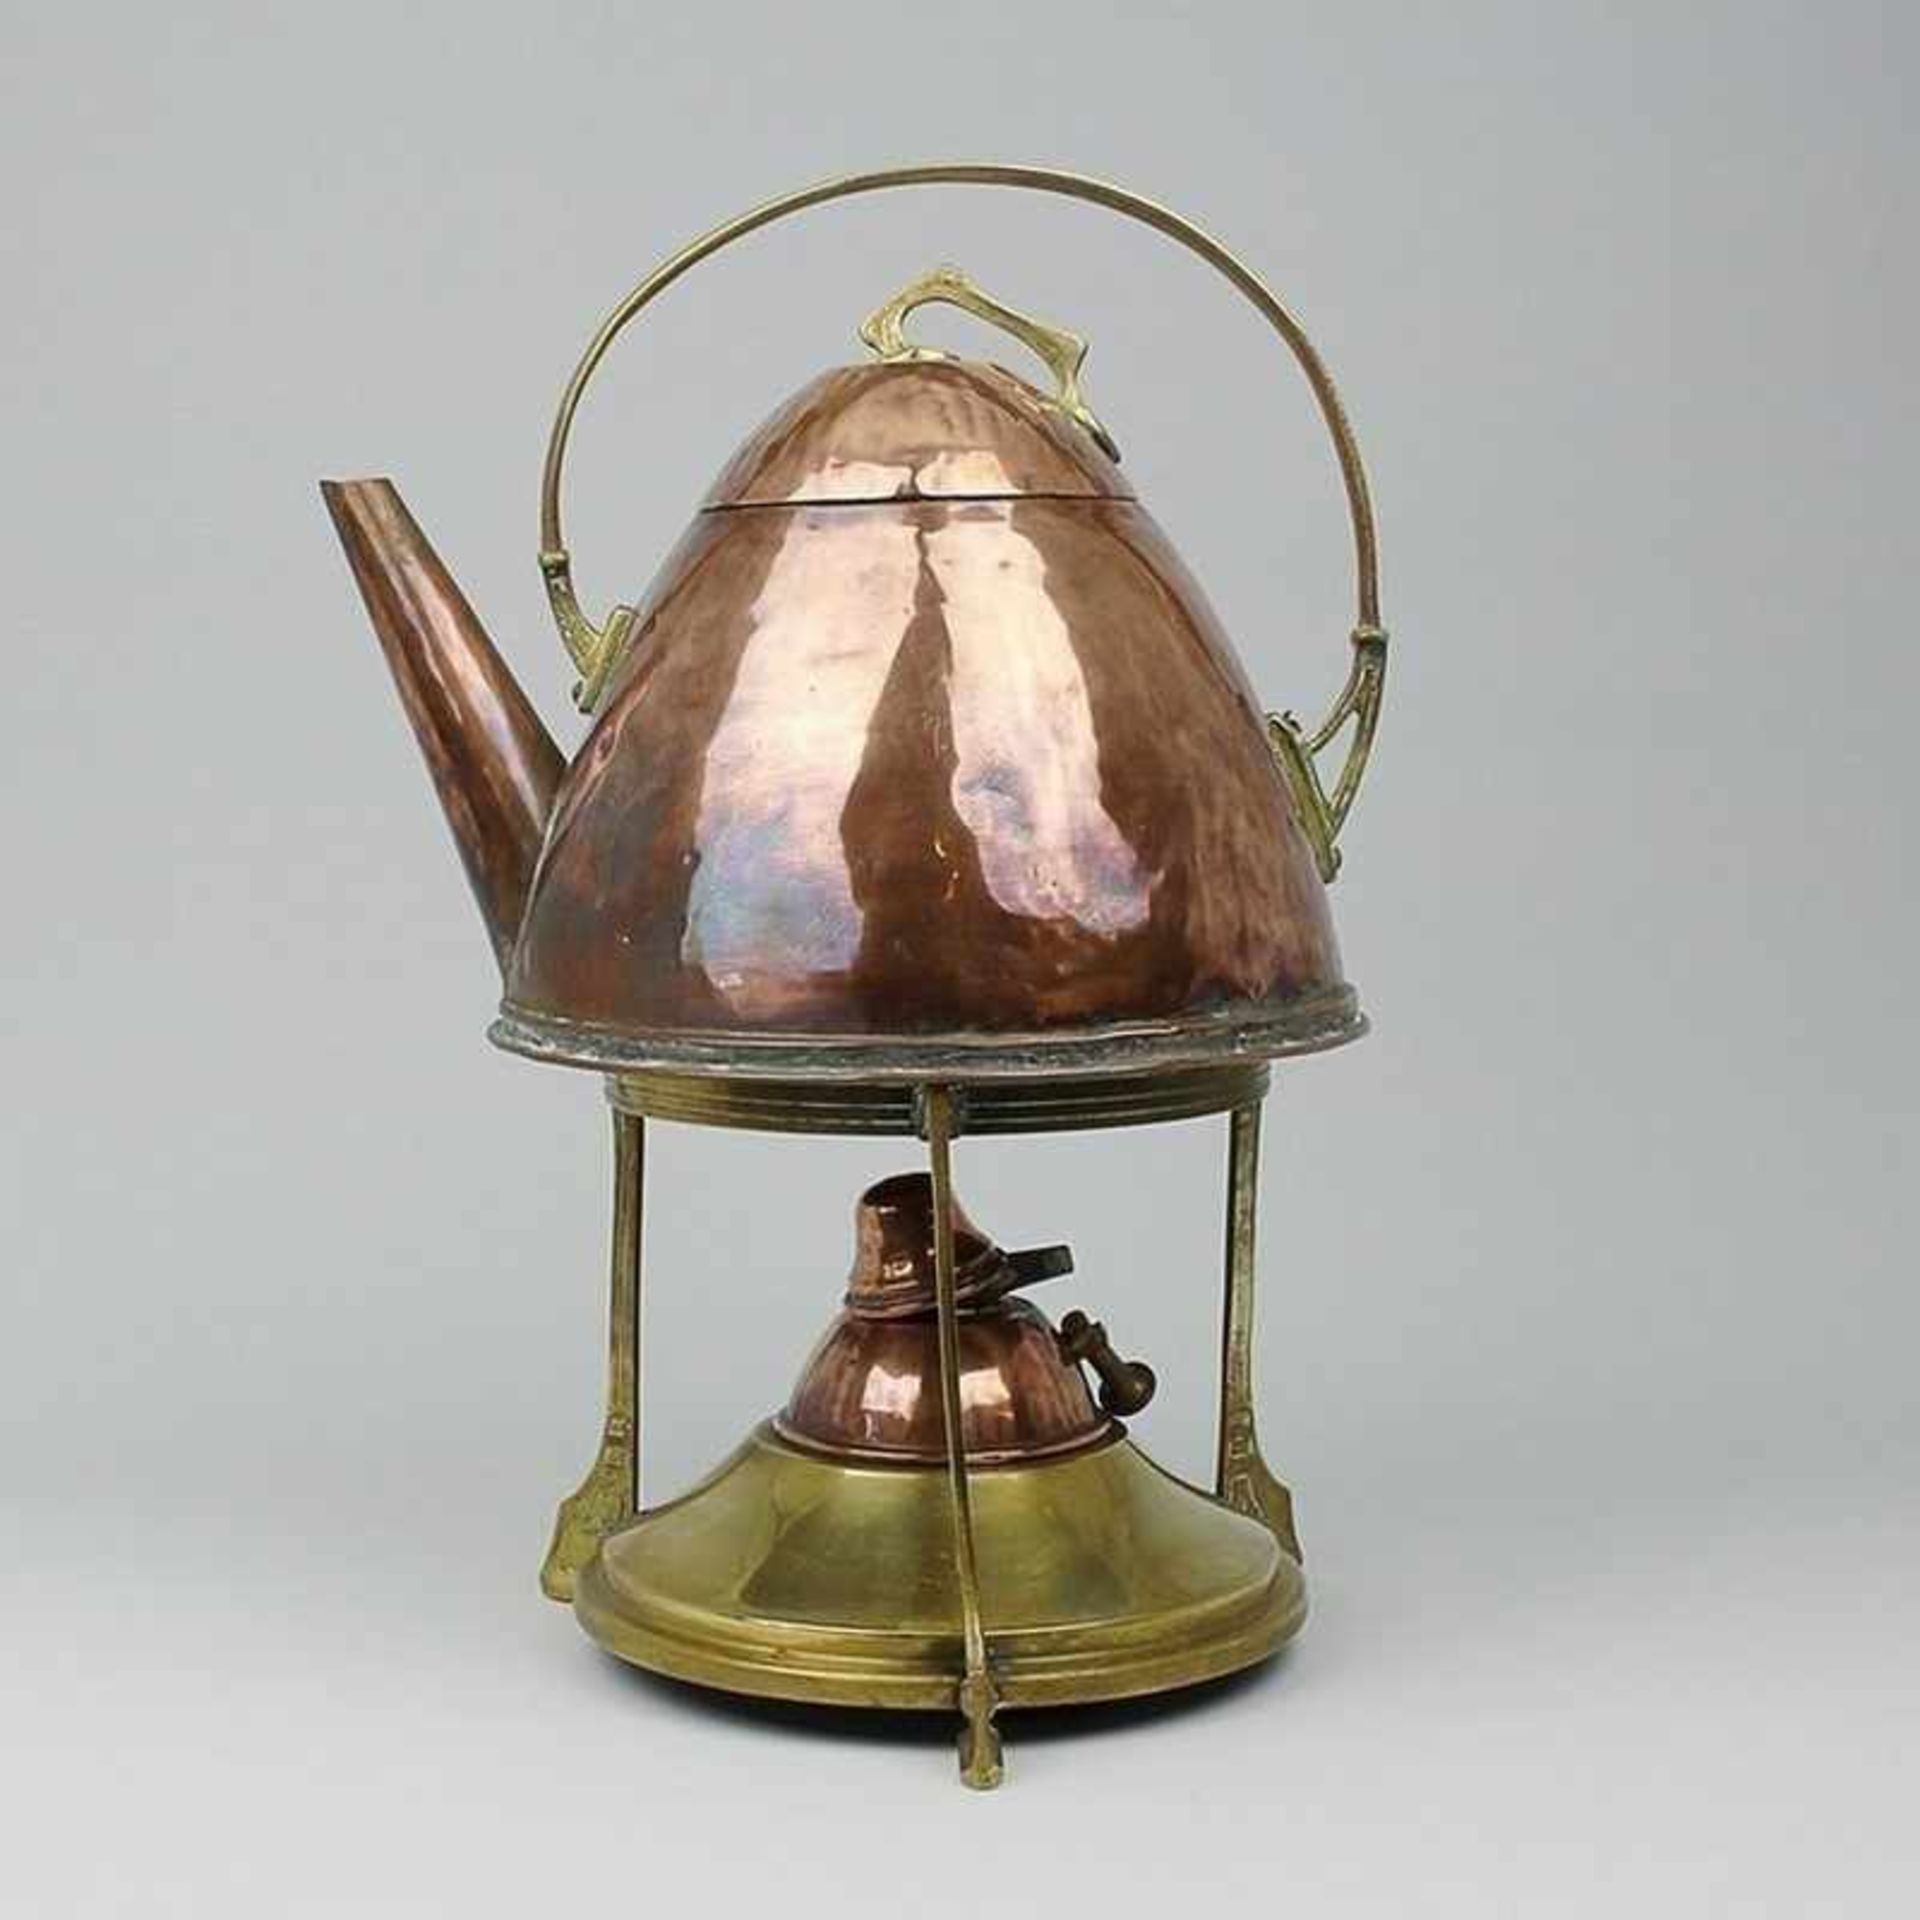 Teekanne mit Rechaud um 1920, Jugendstil, Kupfer/Messing, runder Rechaud m. Brenner, geometrisches